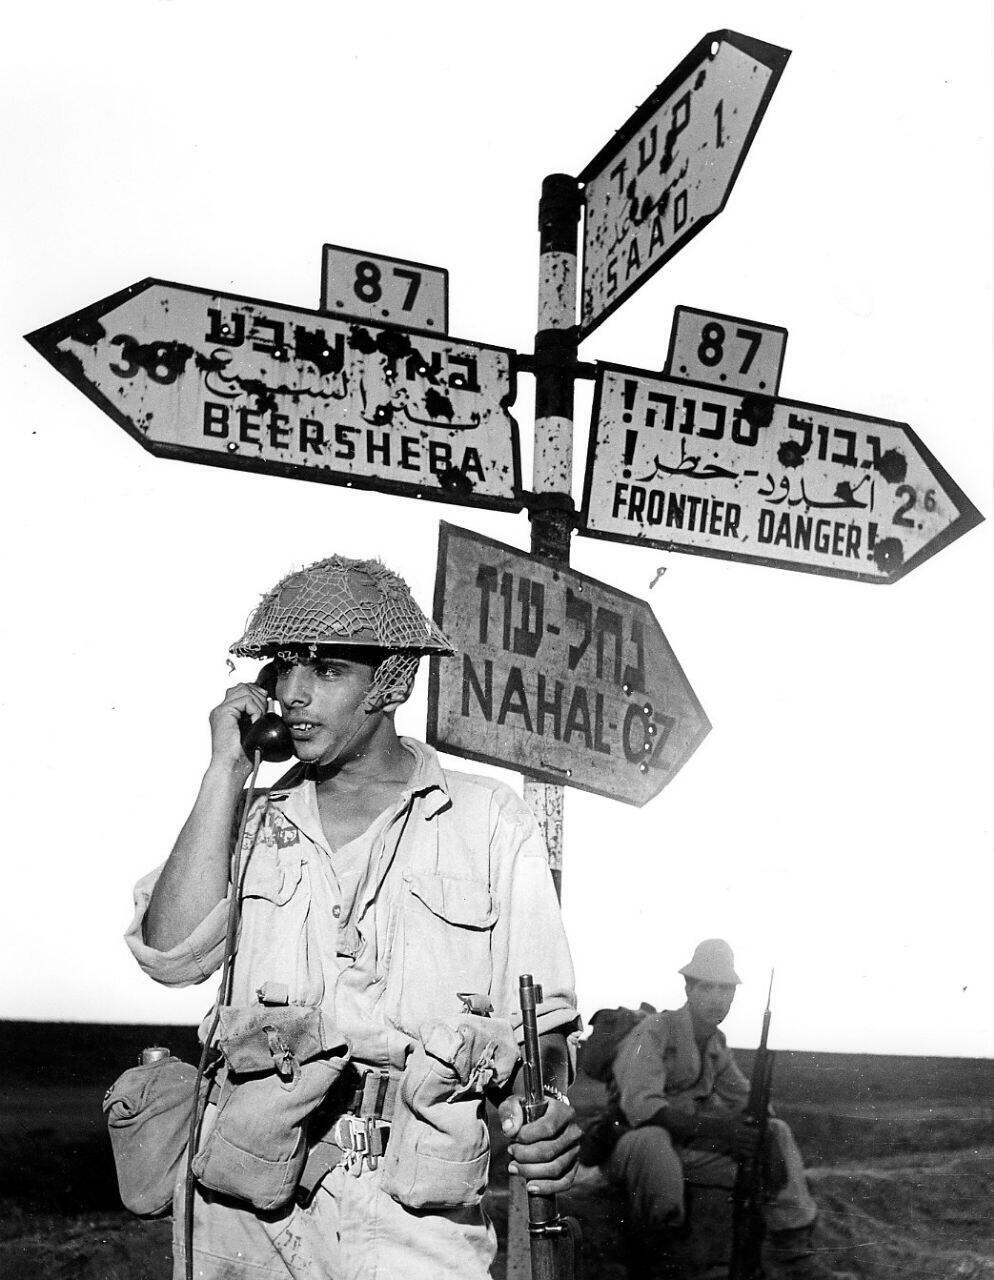 חיילים בצומת סעד 1956. מתוך התערוכה "נחל עוז צילומים"